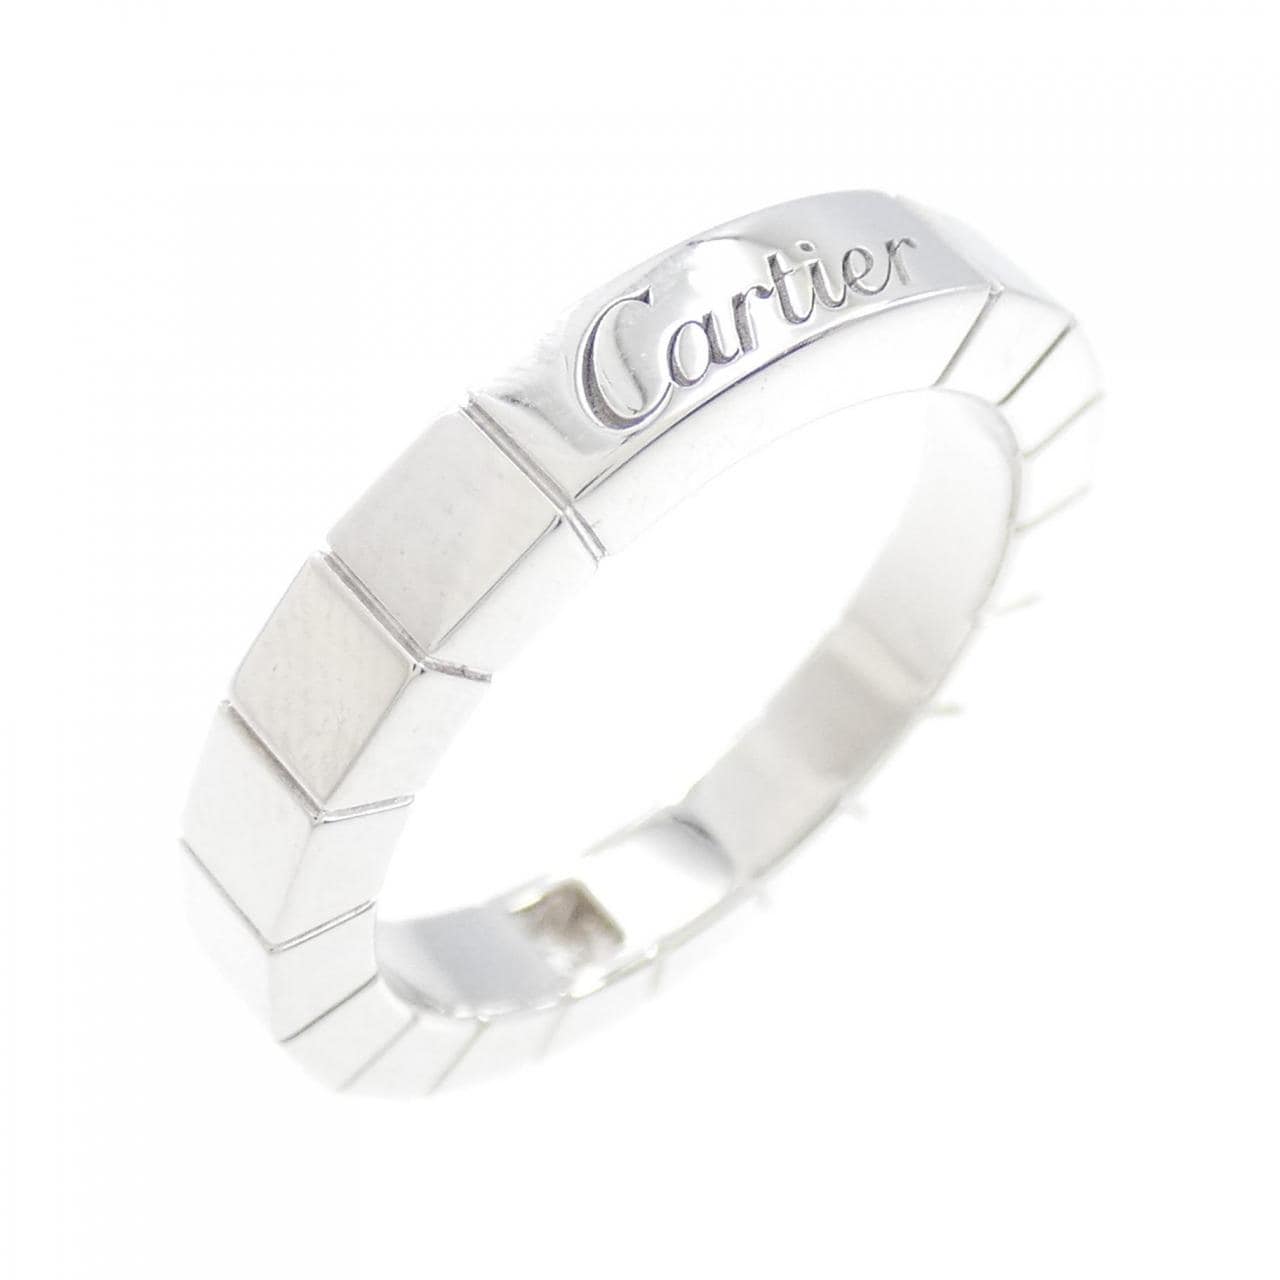 Cartier 1P Lanieres